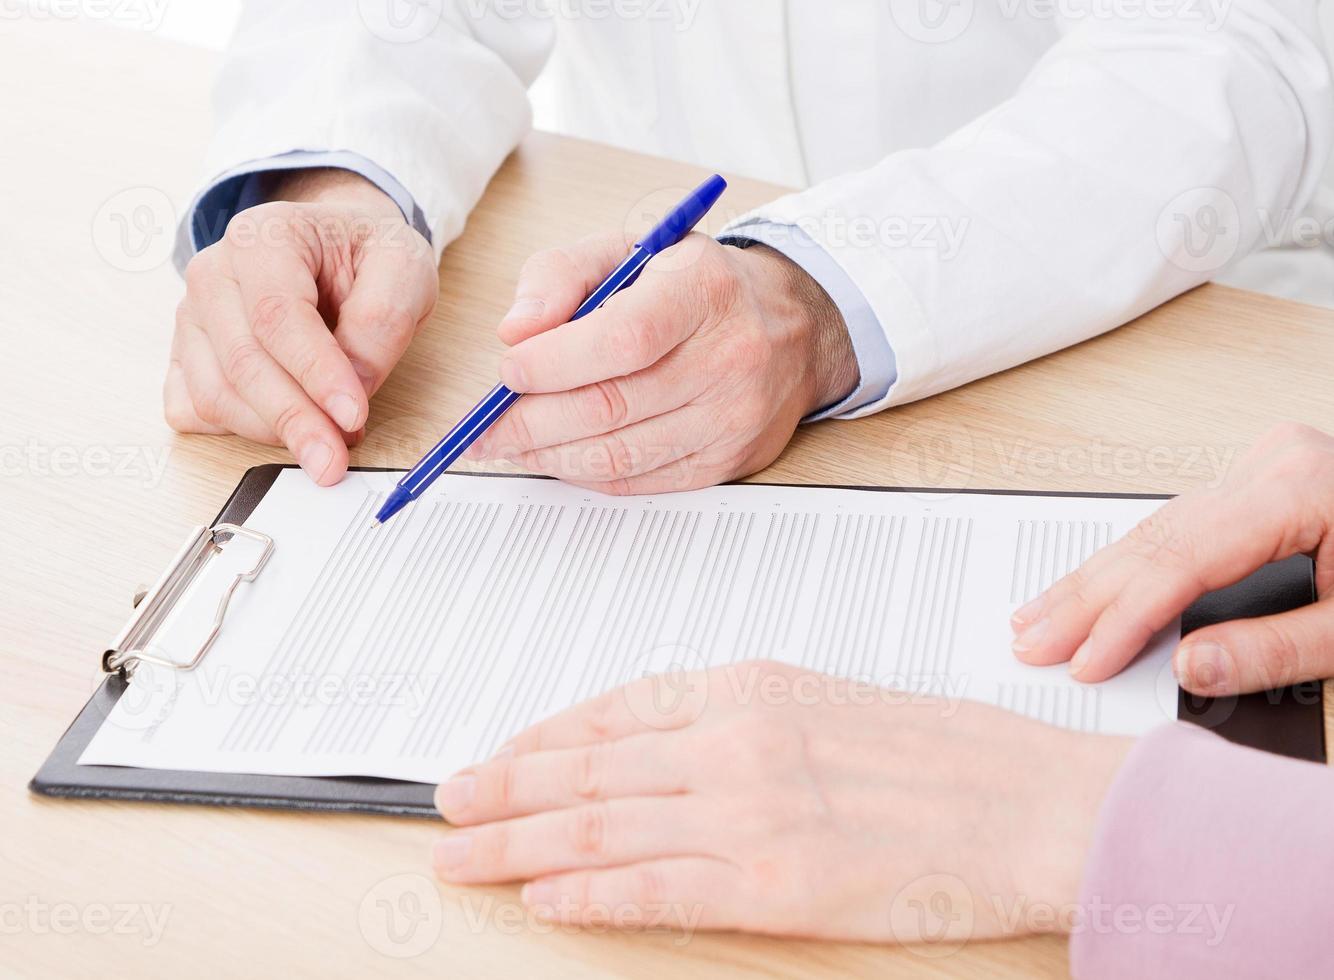 médico e paciente estão discutindo algo, apenas mãos à mesa, seguro médico. foto